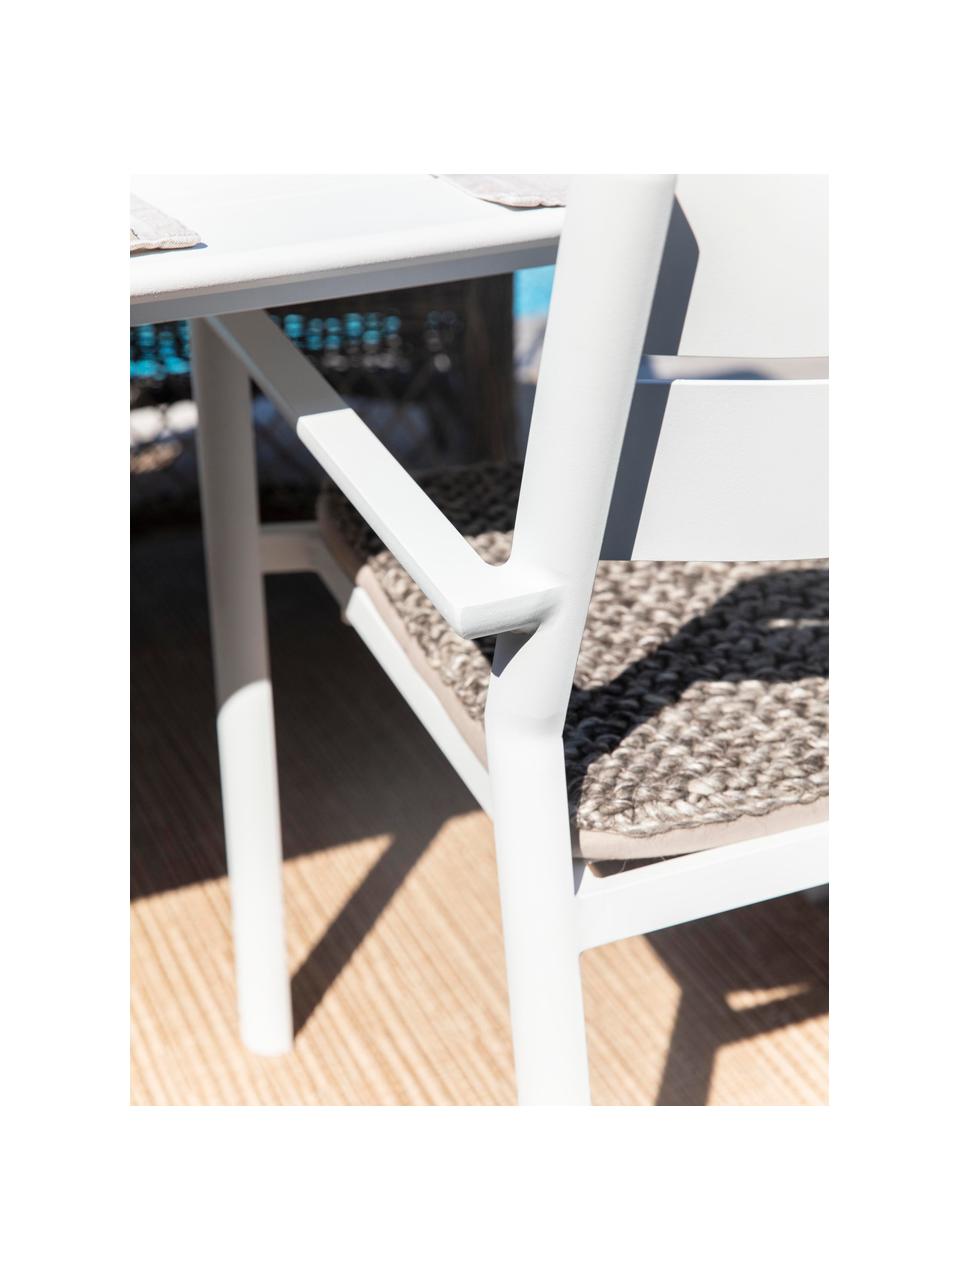 Stohovacia záhradná stolička Delia, Hliník ošetrený práškovým náterom, Biela, Š 55 x H 55 cm